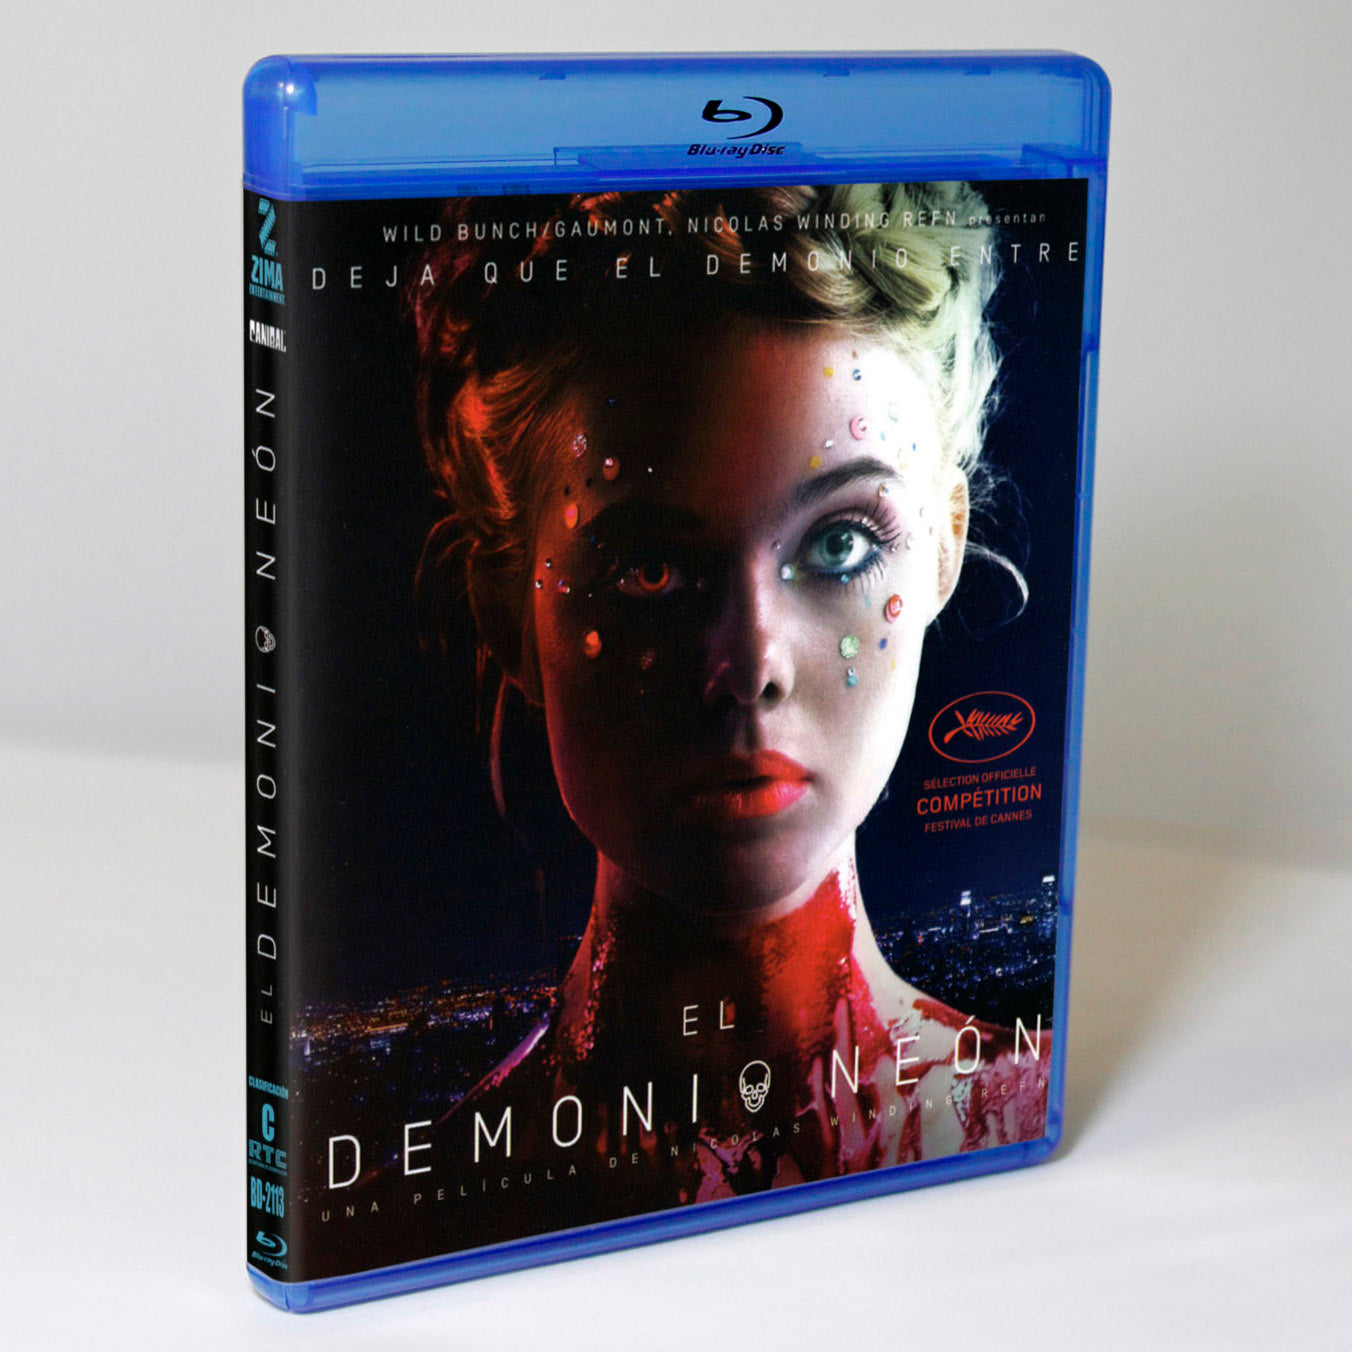 El Demonio Neon Blu-ray